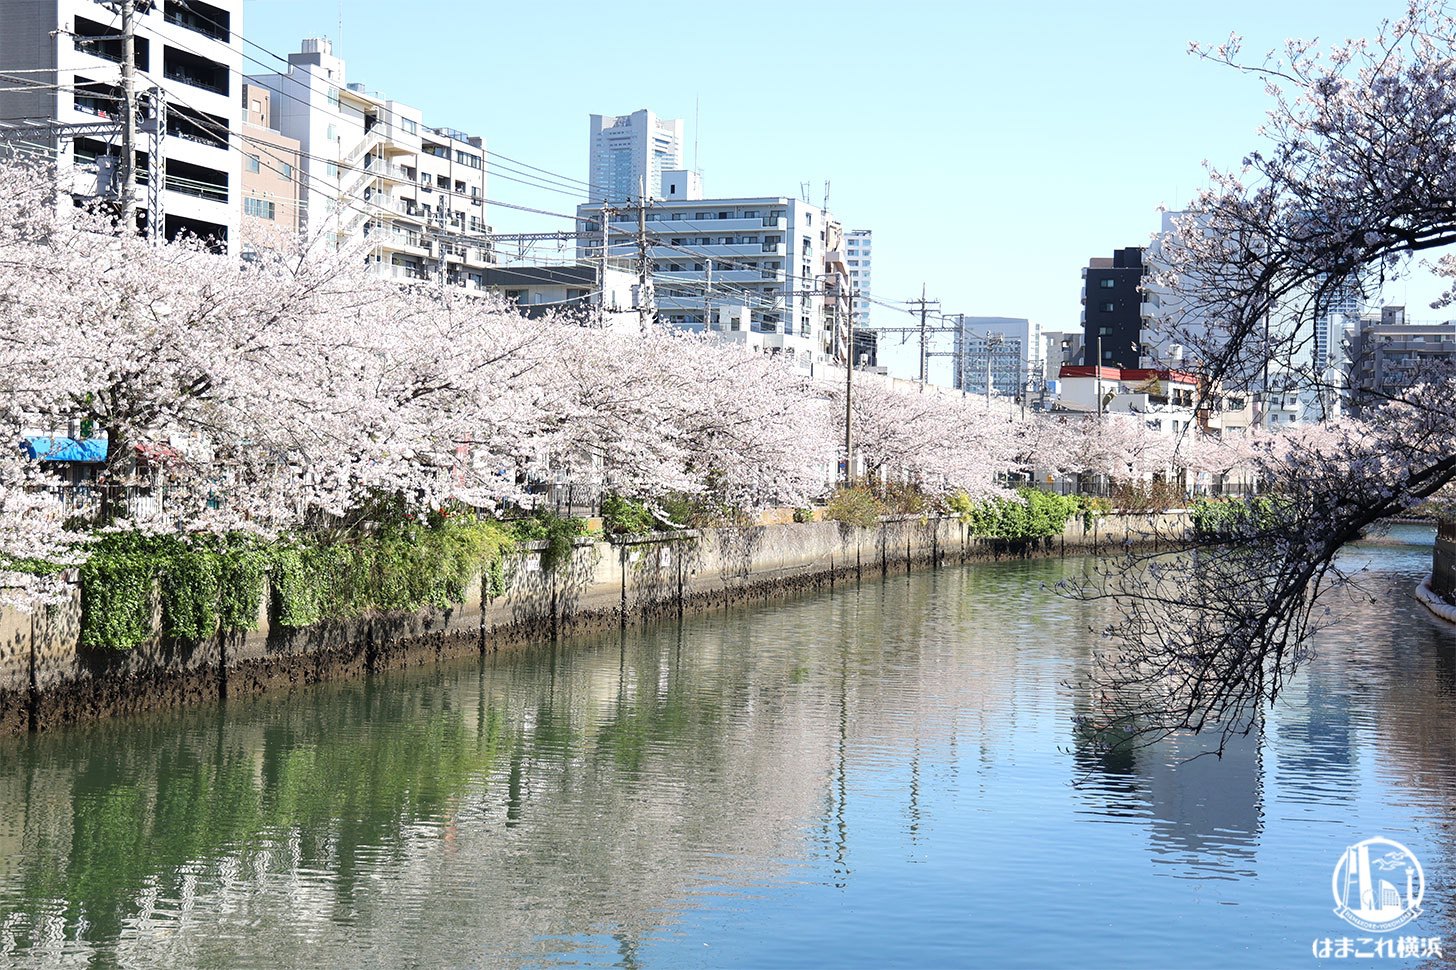 大岡川沿いの桜お花見散歩！黄金町から横浜みなとみらいまで美景に癒され続けた1時間